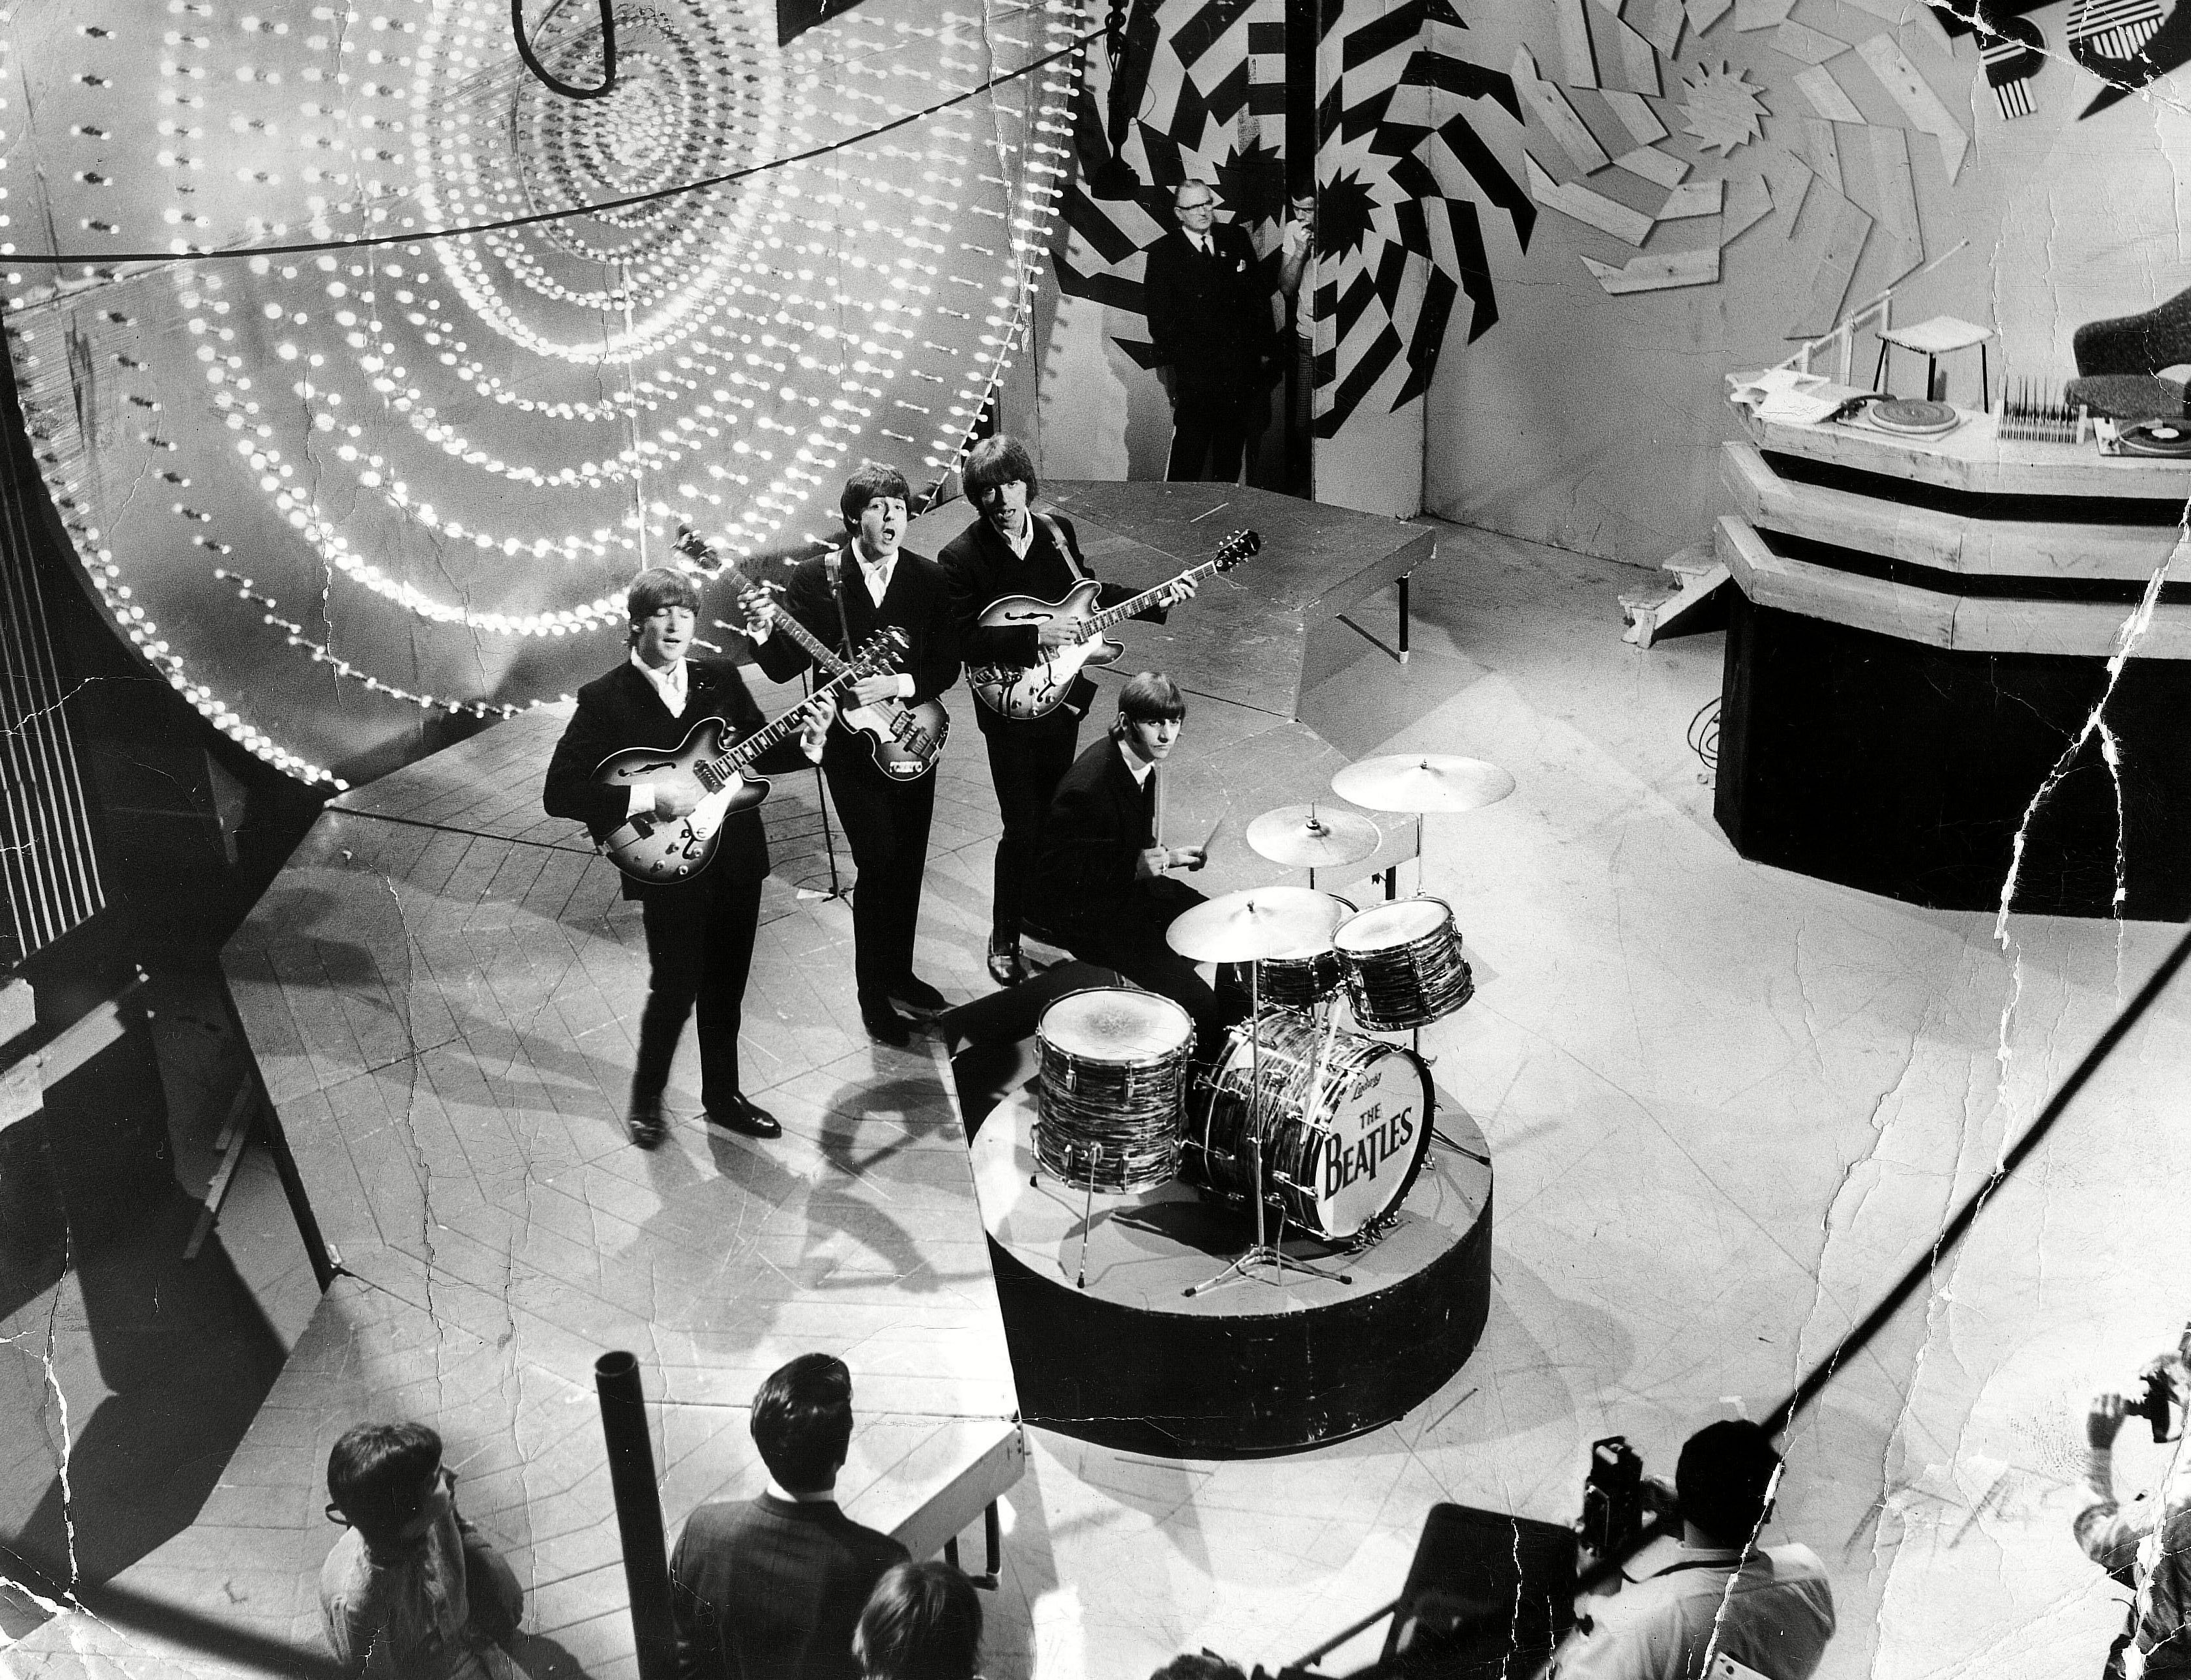 Der Auftritt der Beatles im Jahr 1966 ist verloren gegangen